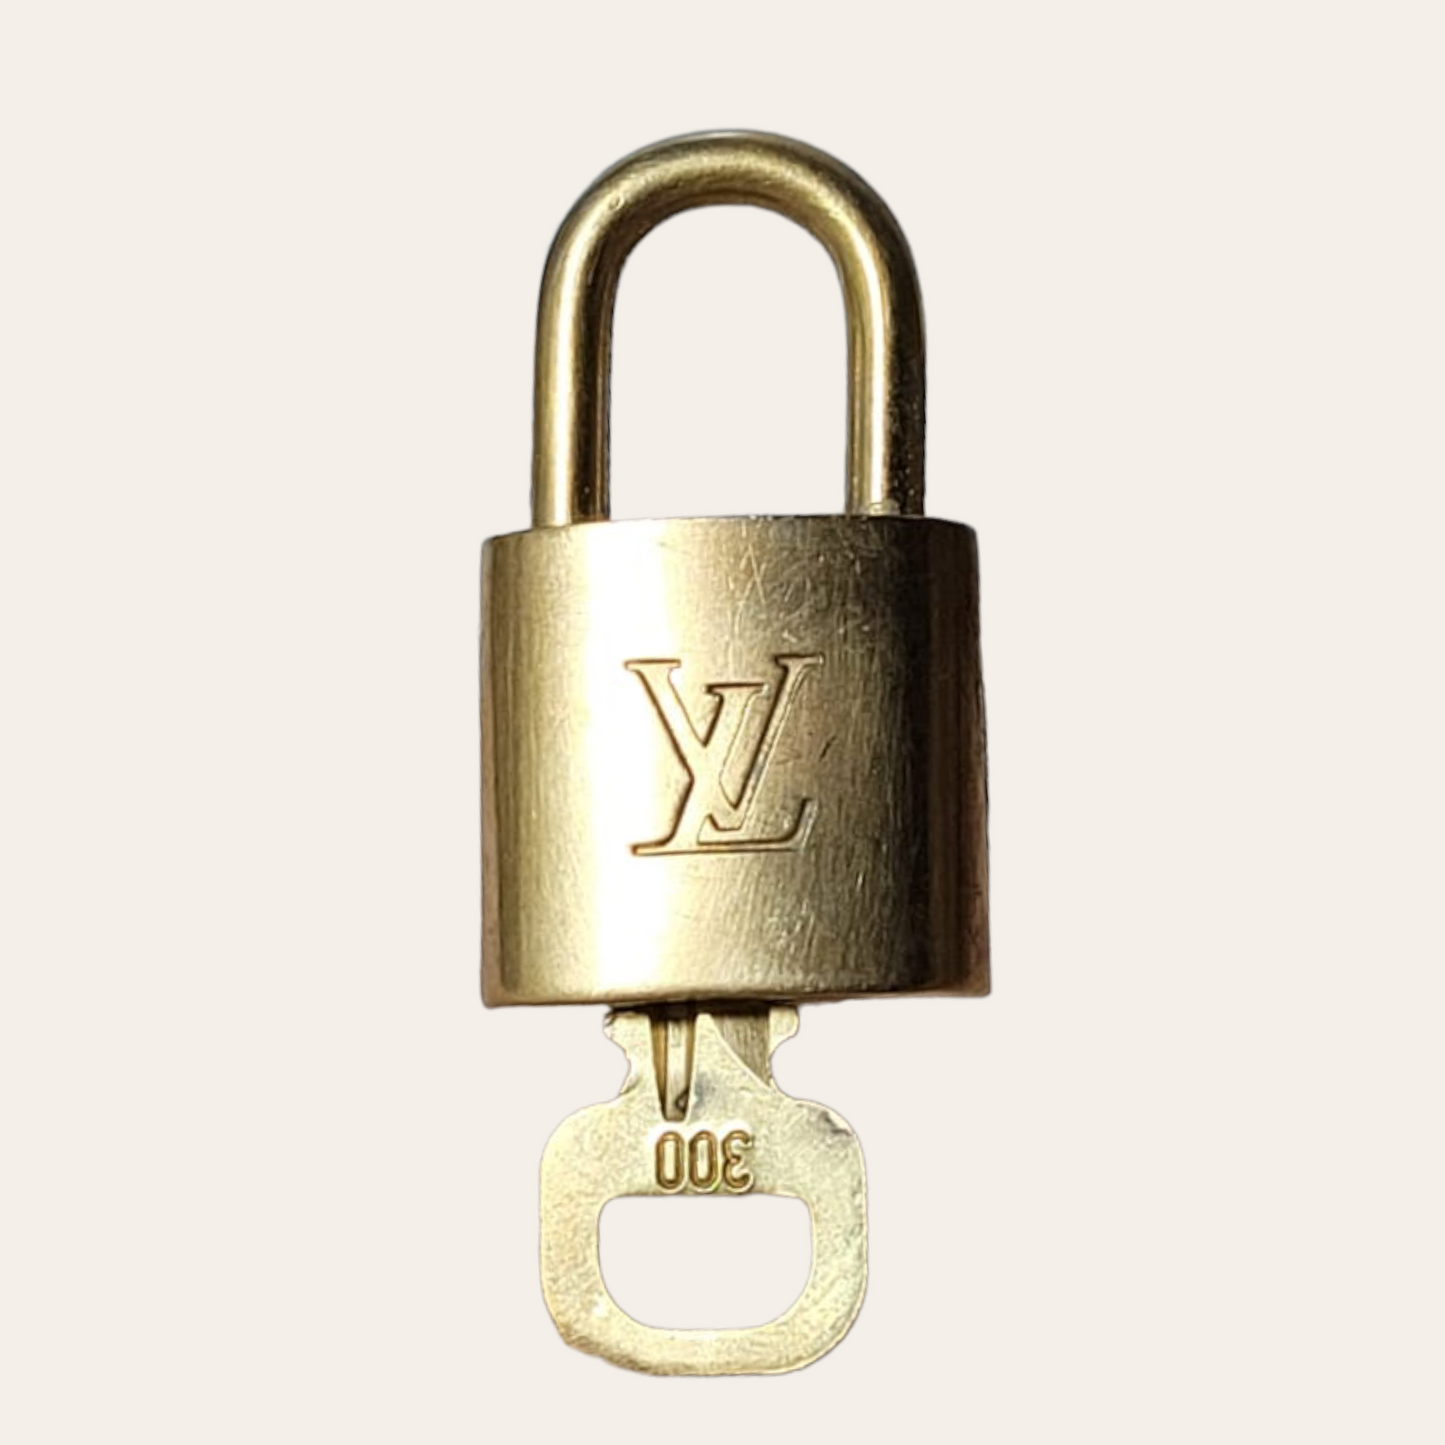 Louis Vuitton Lockset